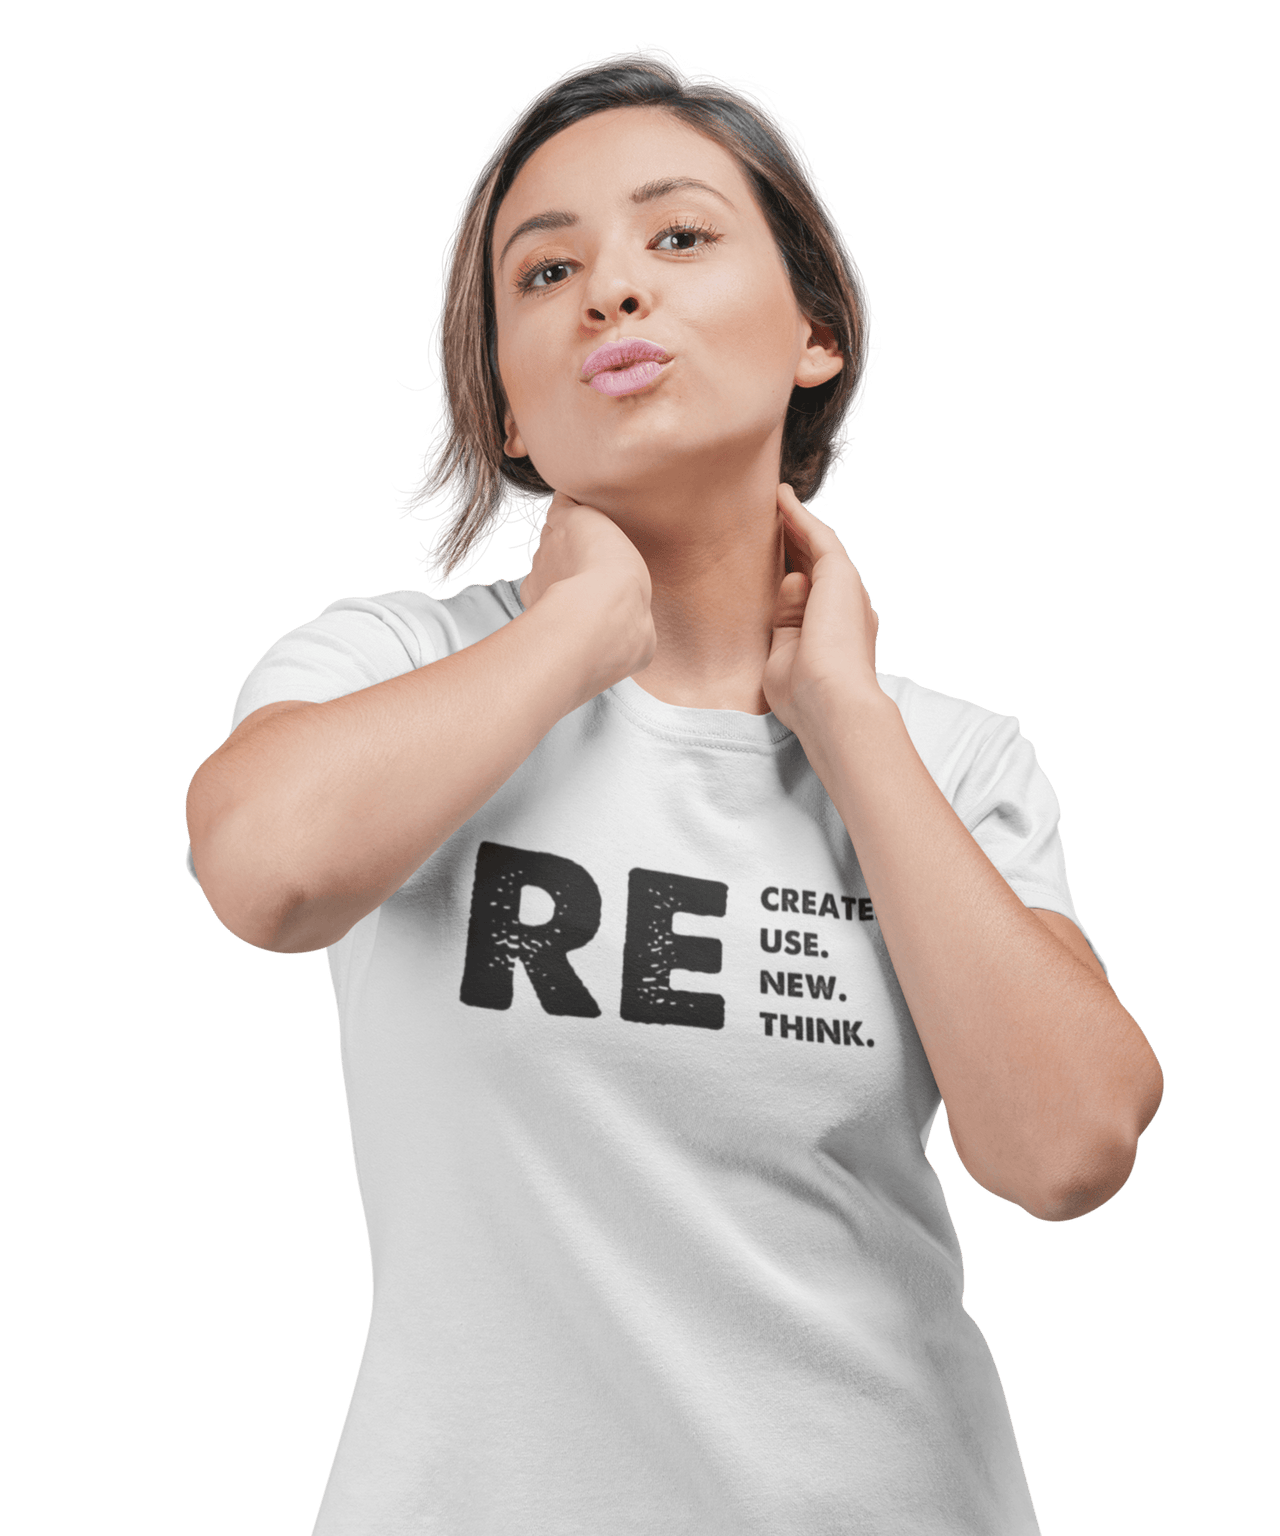 Recreate, Reuse, Renew, Rethink Unisex T-Shirt For Men 8Ball